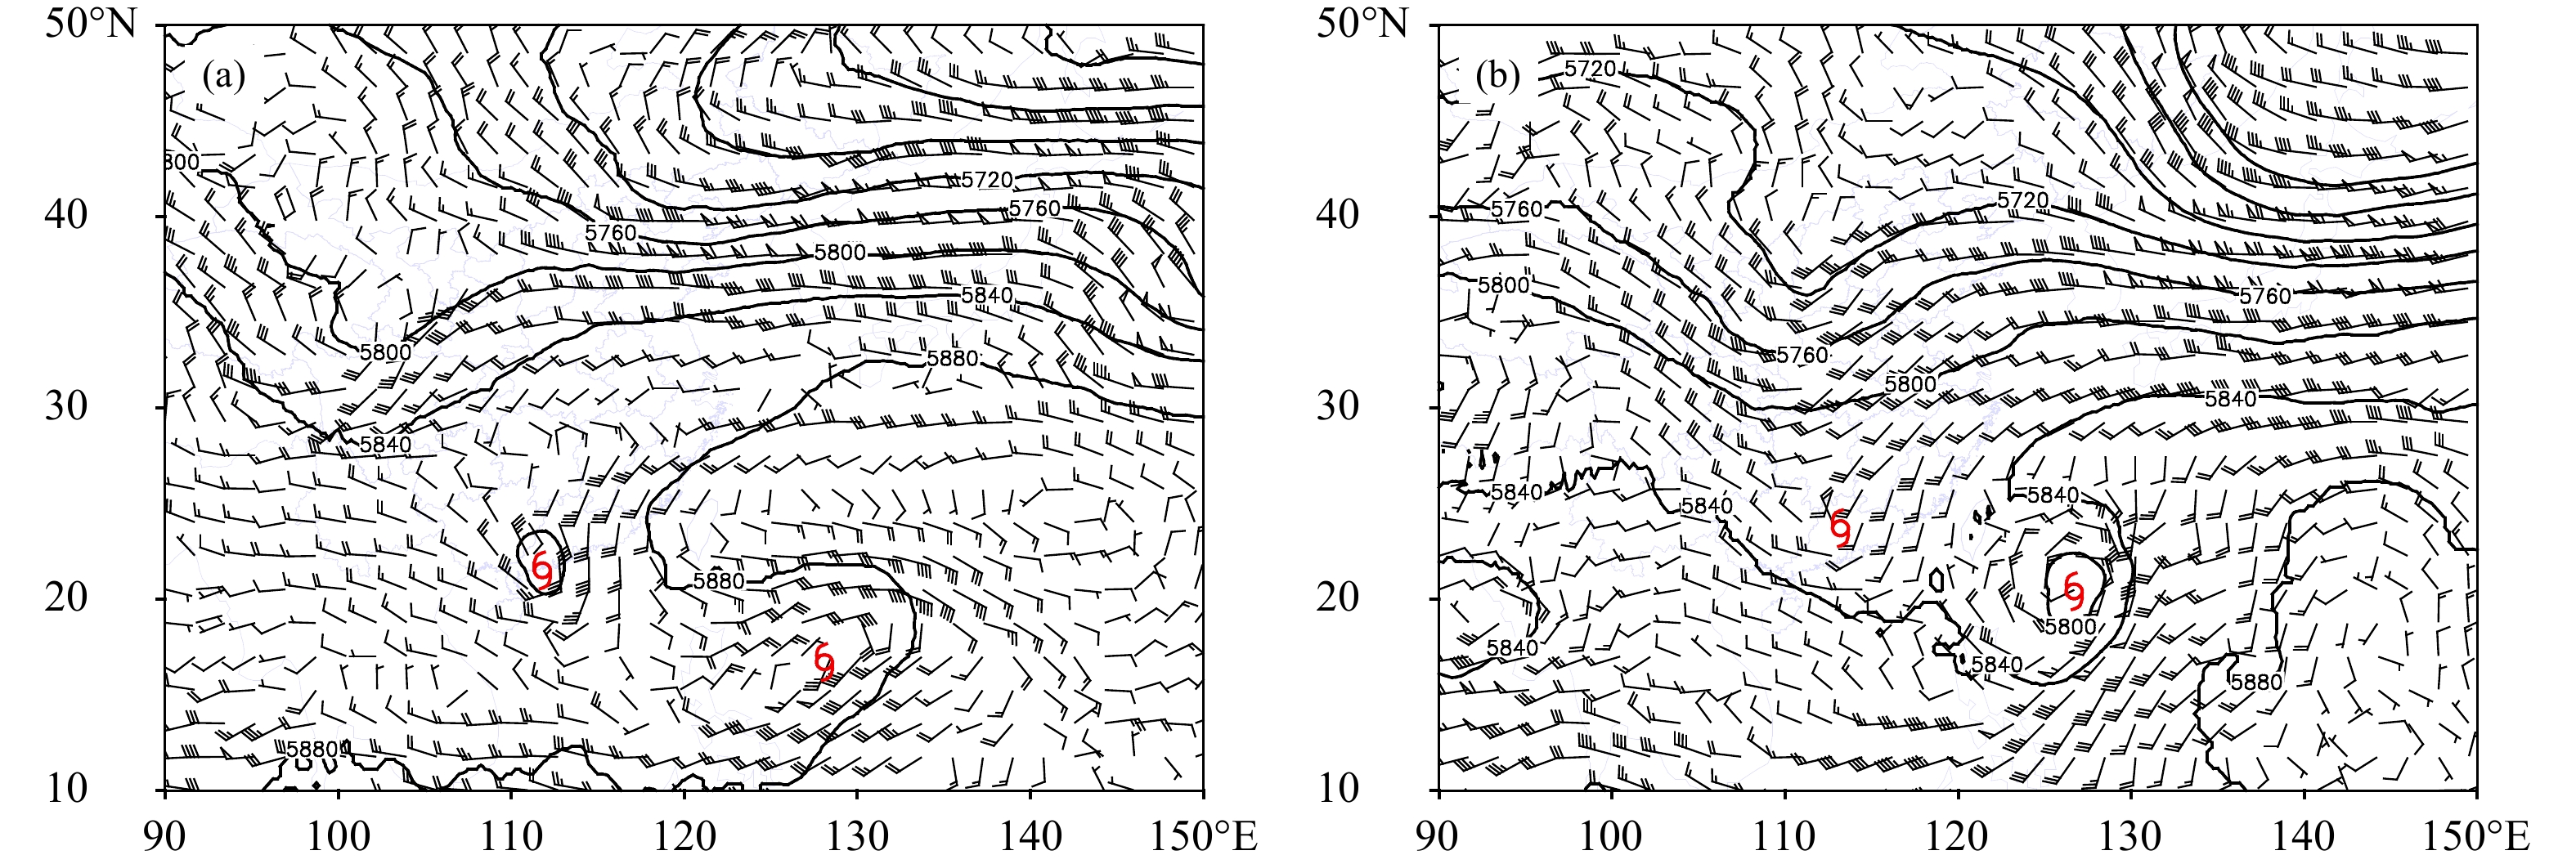 台风艾云尼非对称降水及动热力结构演变特征分析